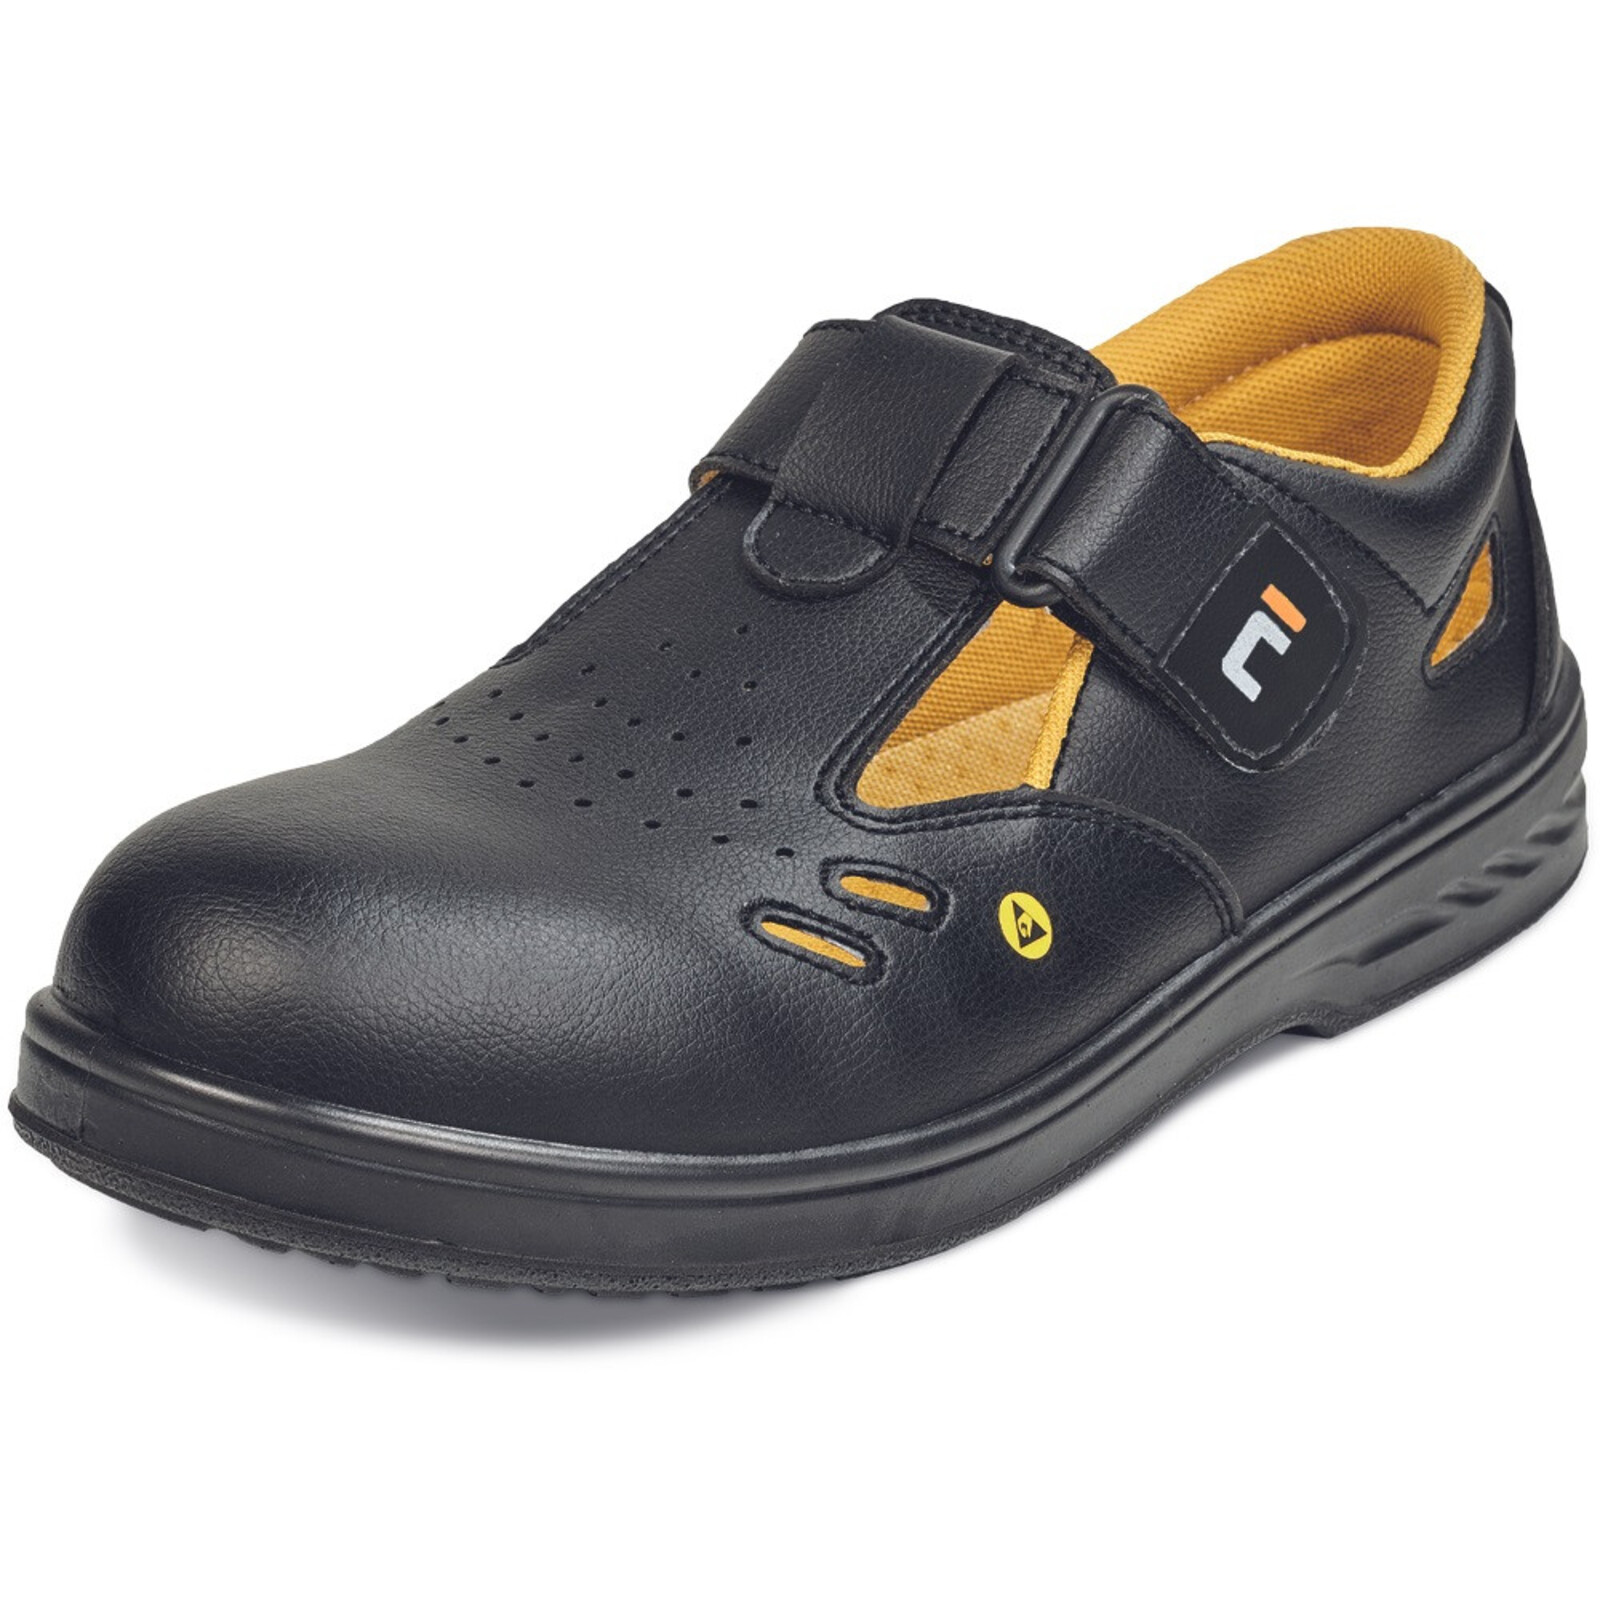 Bezpečnostné sandále Raven MF ESD S1 SRC - veľkosť: 43, farba: čierna